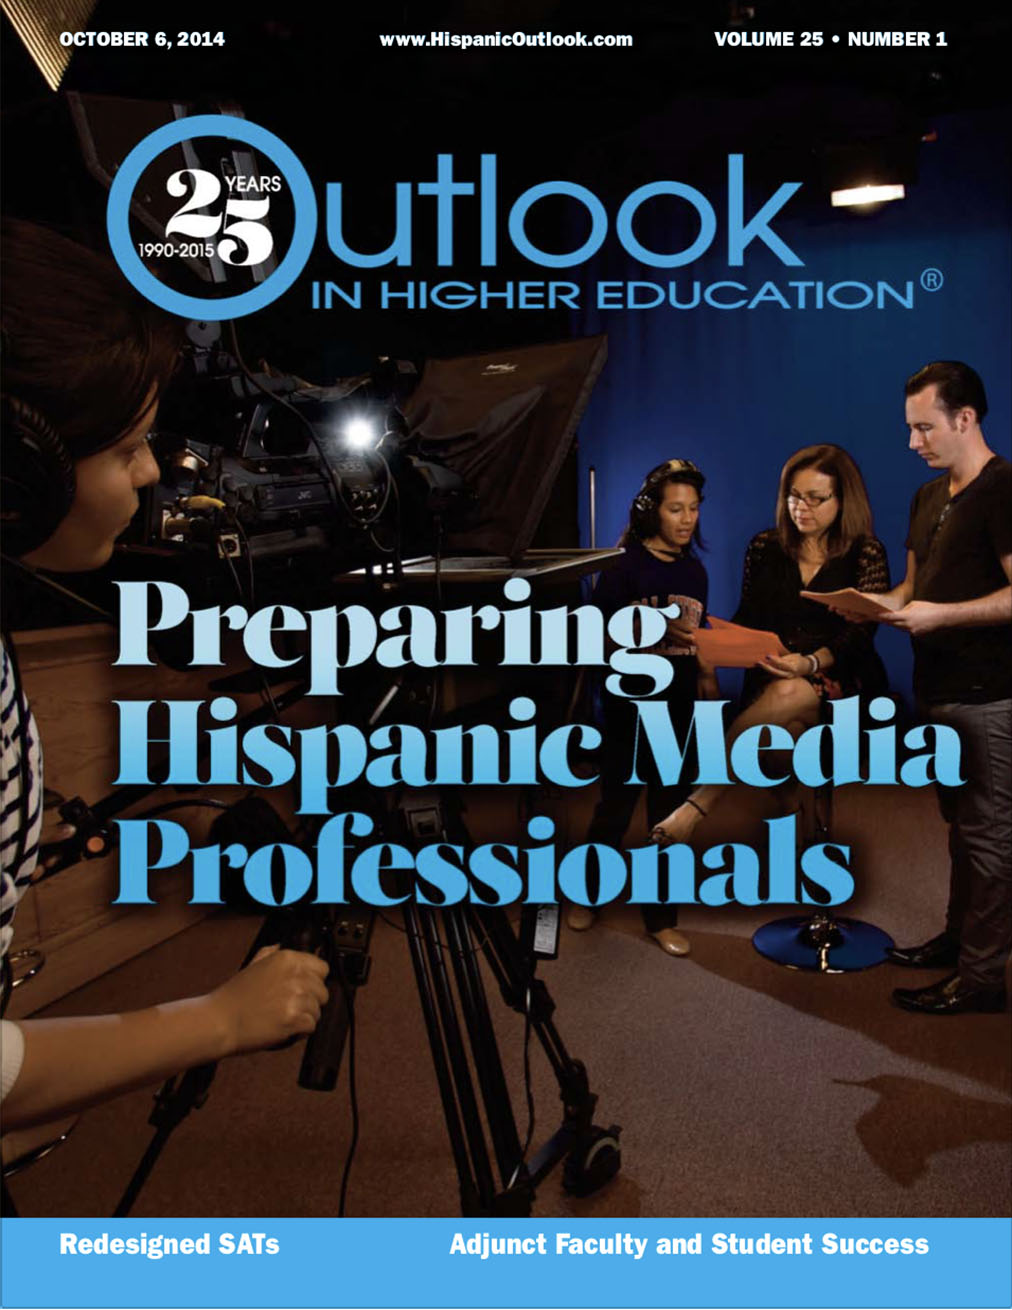 Preparing Hispanic Media Professionals